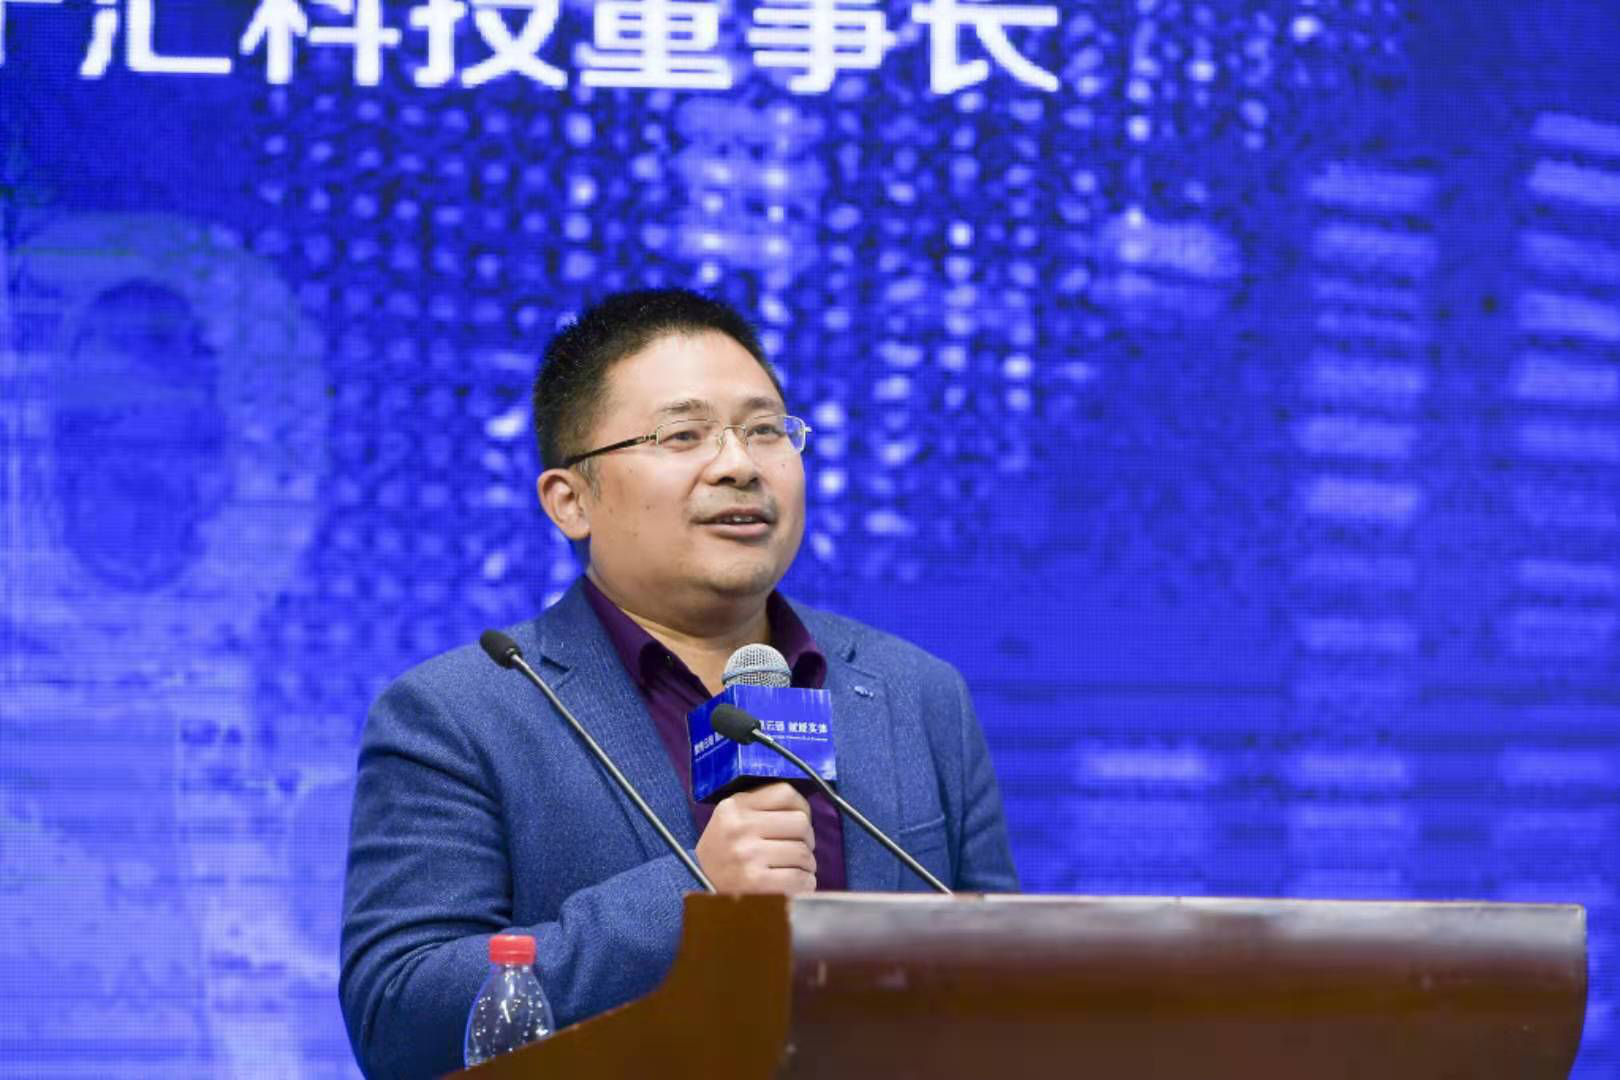 首届中国区块链与算法经济国际会议召开 金宁汇科技发布新一代联盟链技术NewSpiral